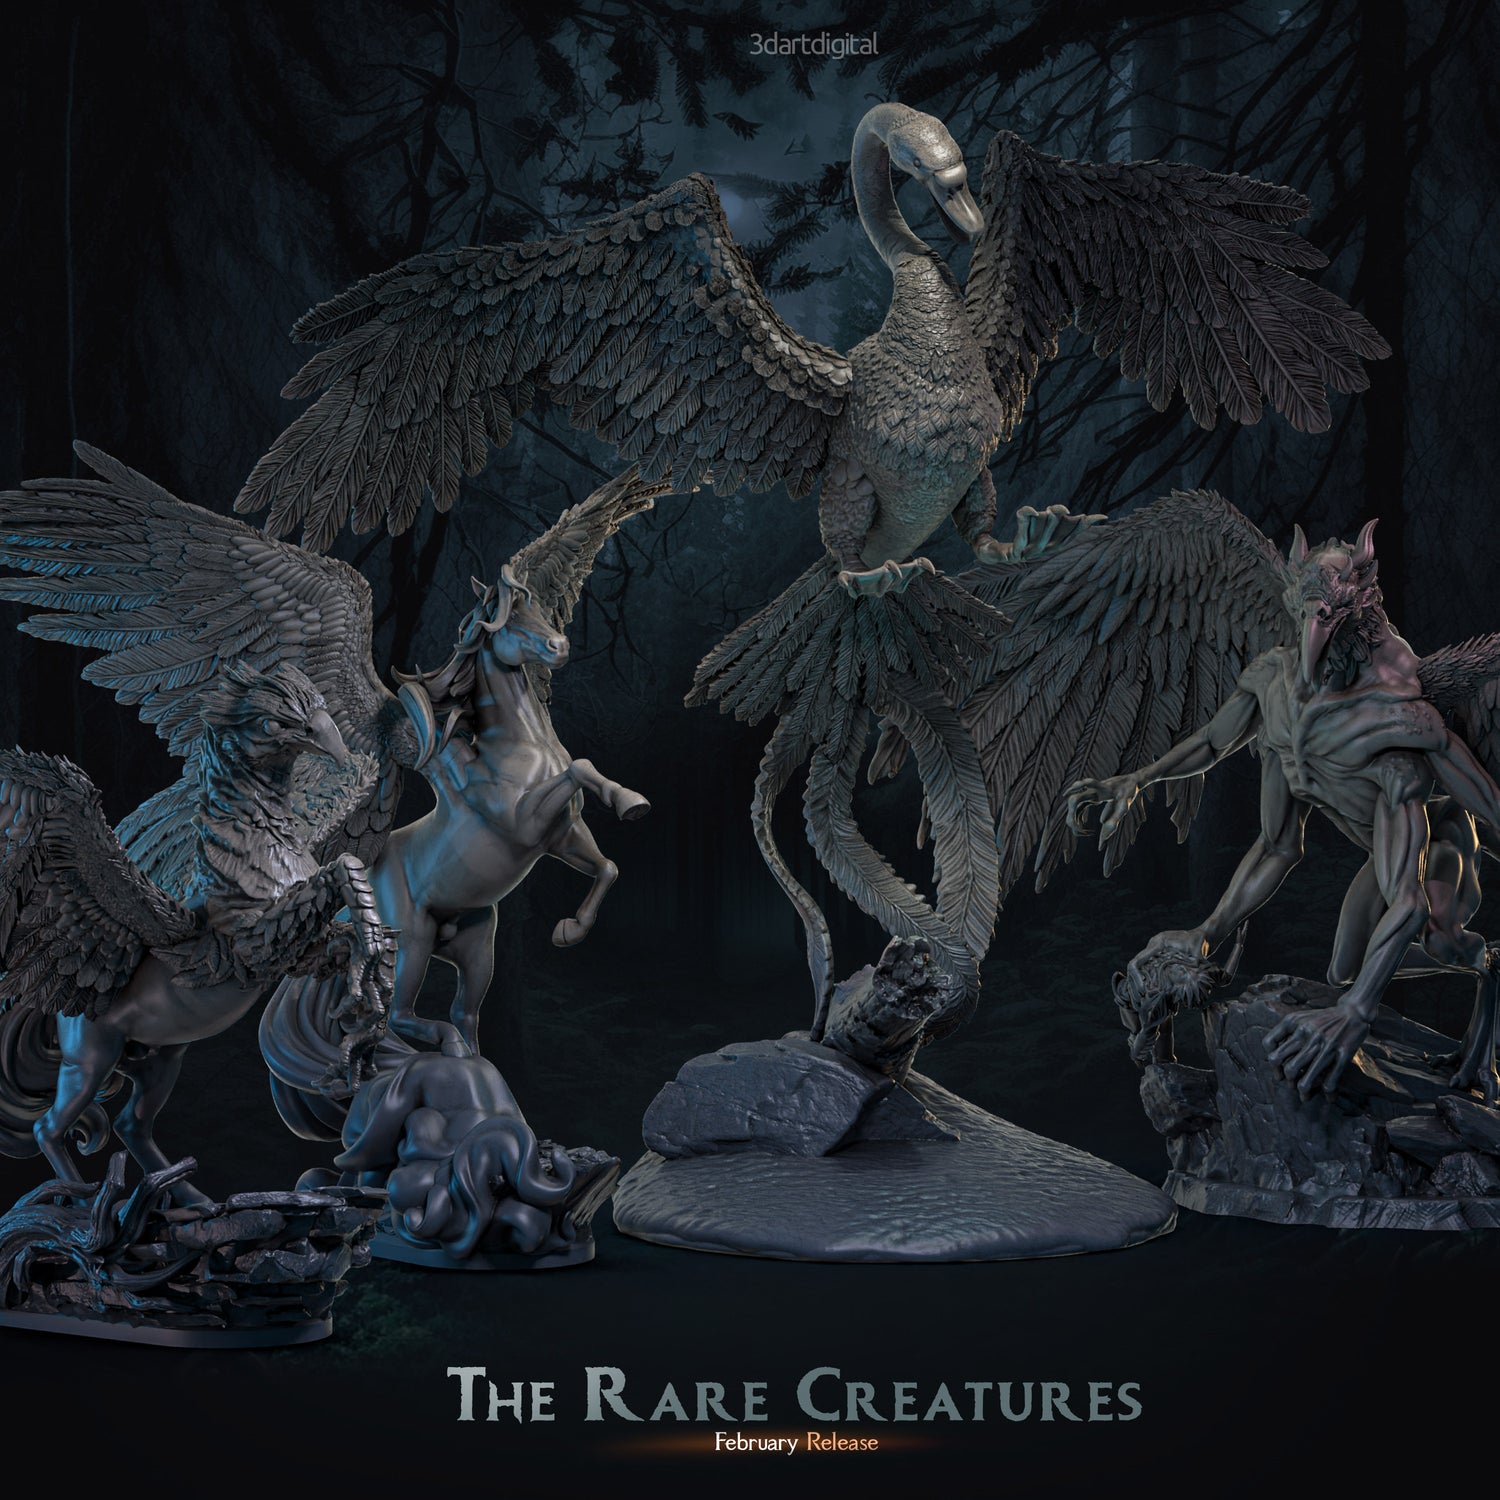 The Rare Creatures